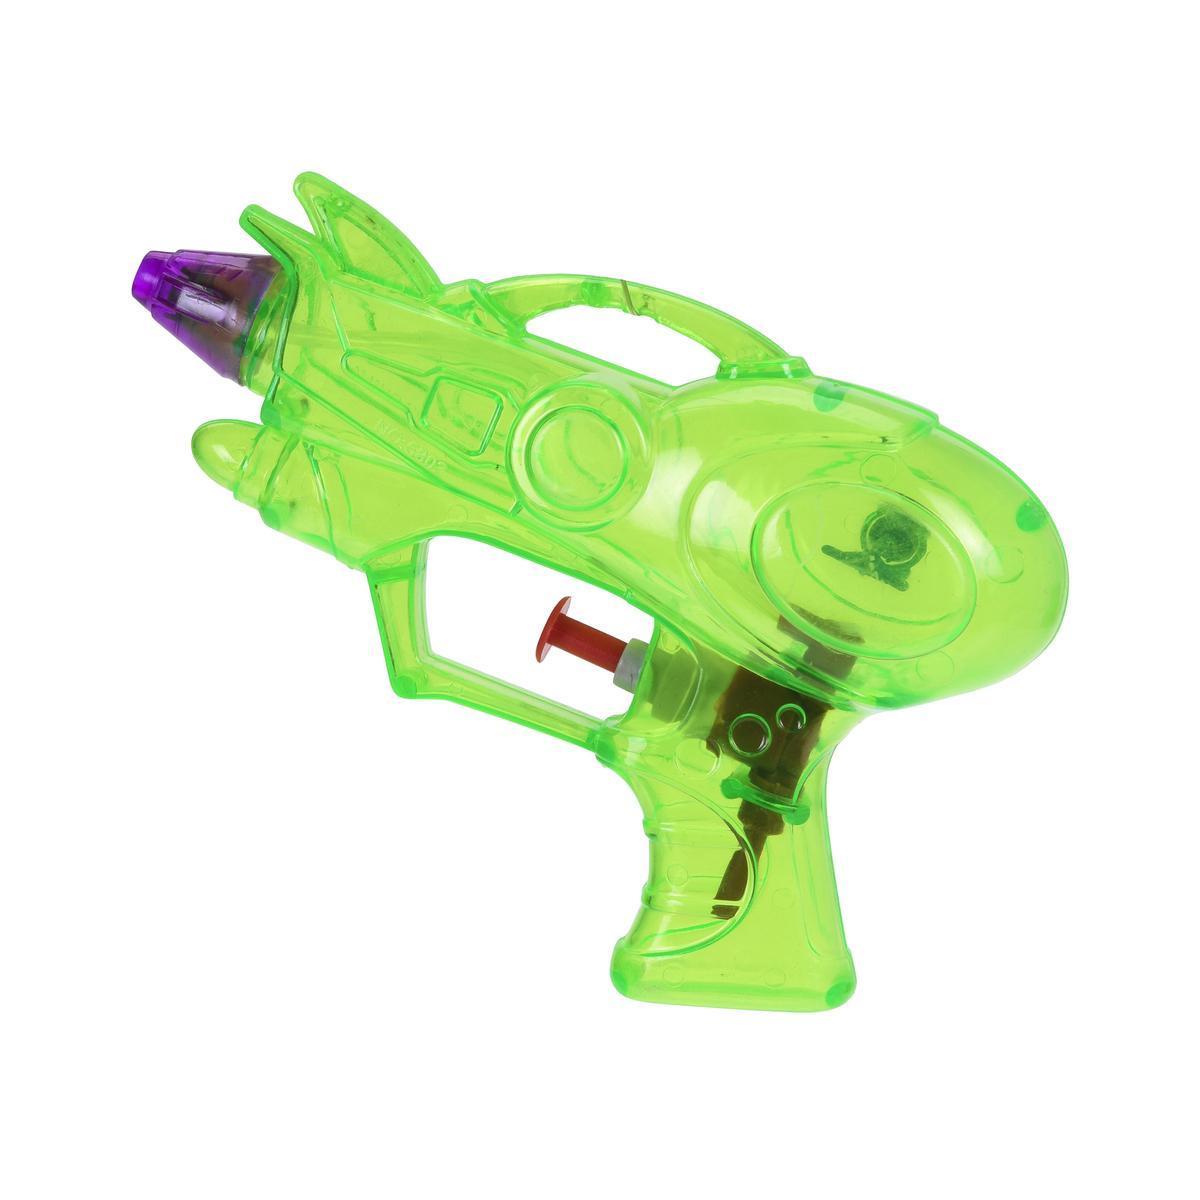 Fusil à eau - L 15 cm - Différents modèles - Multicolore